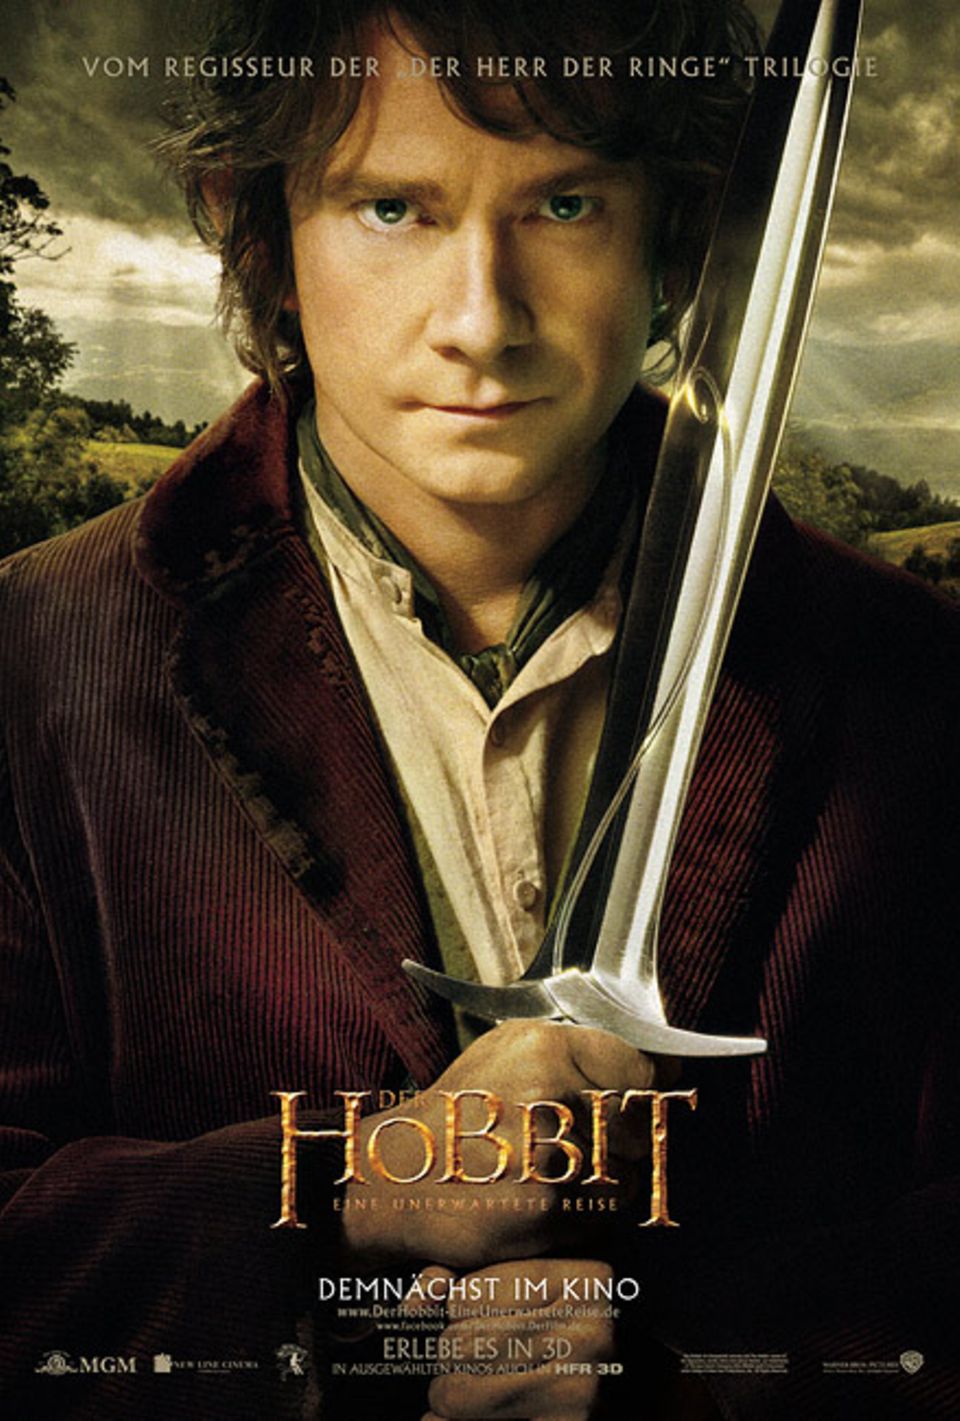 Kinotipp: Der Hobbit - Eine unerwartete Reise